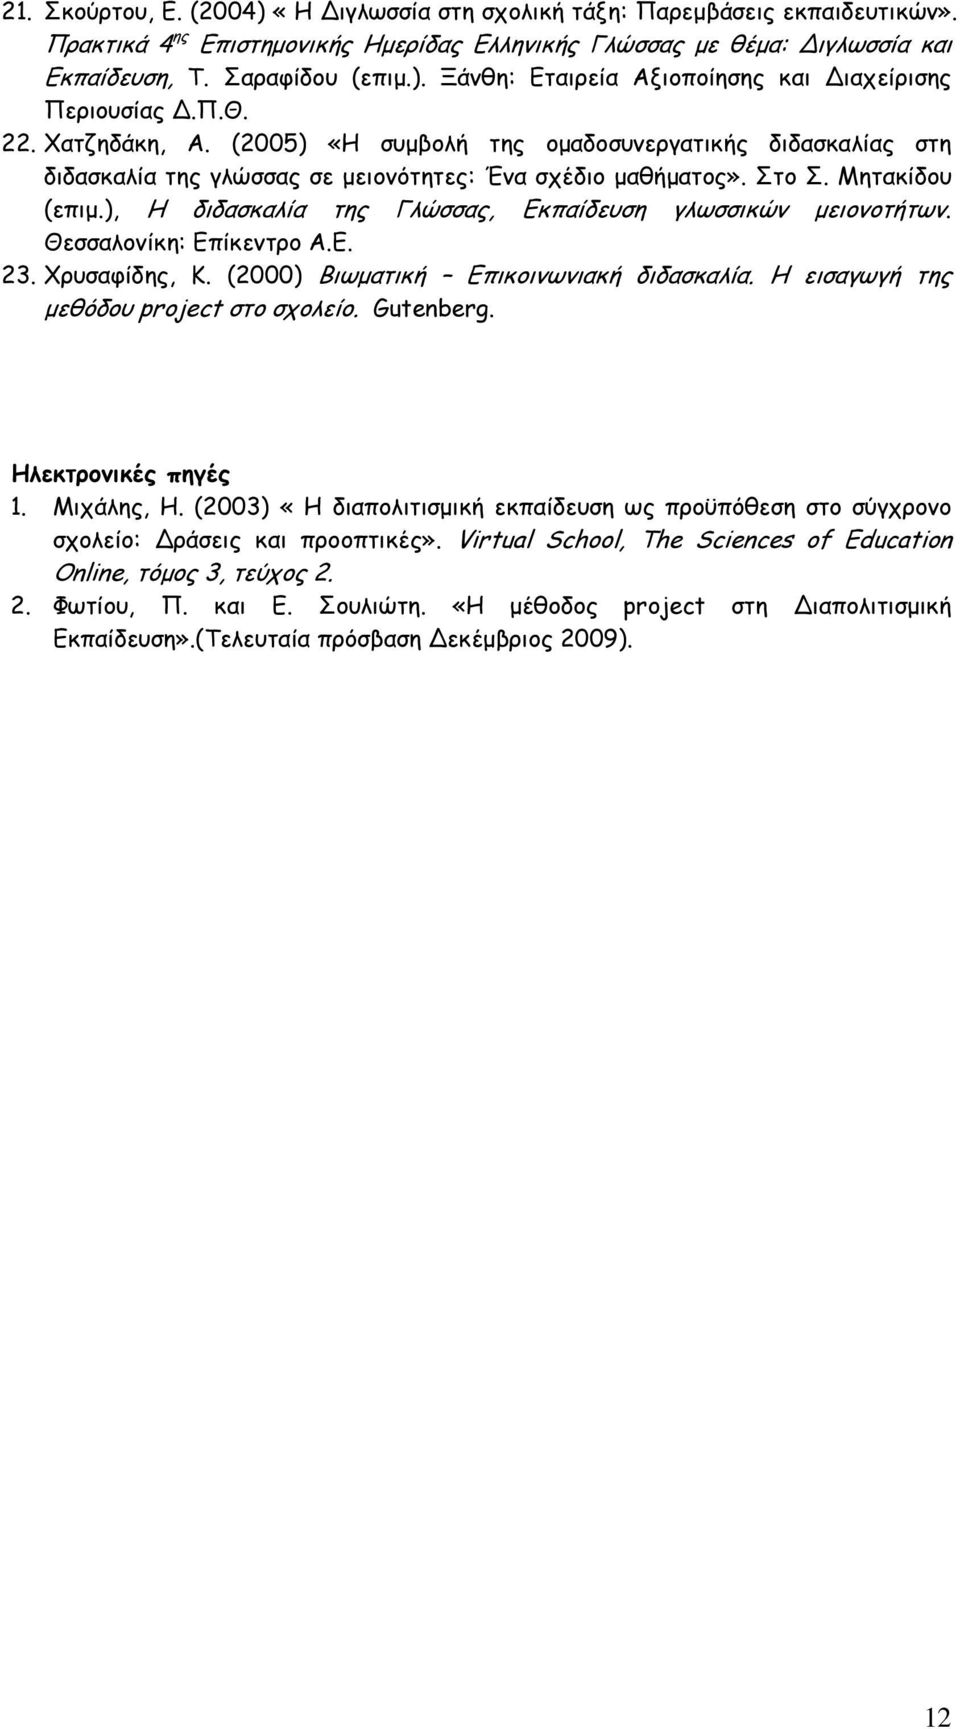 ), Η διδασκαλία της Γλώσσας, Εκπαίδευση γλωσσικών µειονοτήτων. Θεσσαλονίκη: Επίκεντρο Α.Ε. 23. Χρυσαφίδης, Κ. (2000) Βιωµατική Επικοινωνιακή διδασκαλία. Η εισαγωγή της µεθόδου project στο σχολείο.